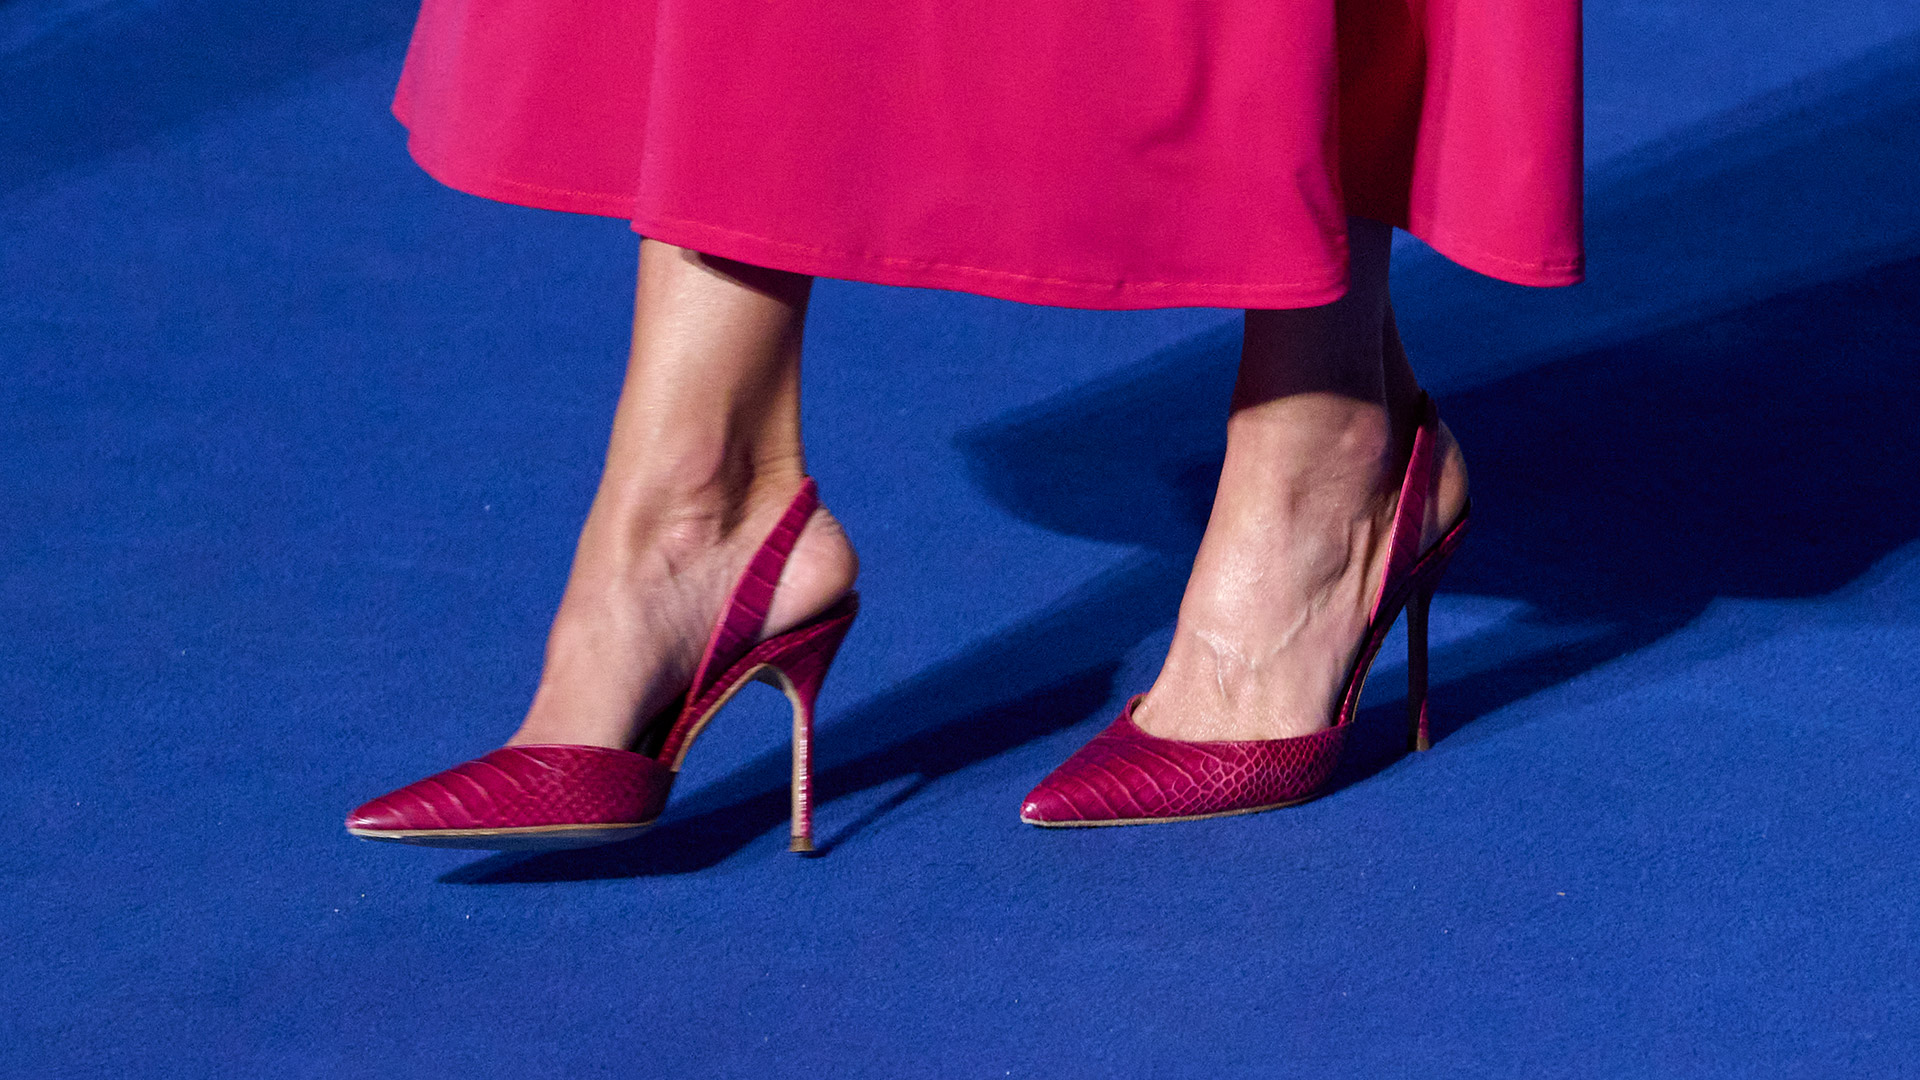 Para completar su look, Letizia sumó un par de stilettos confeccionados por Carolina Herrera
(Photo by Carlos Alvarez H./Getty Images)